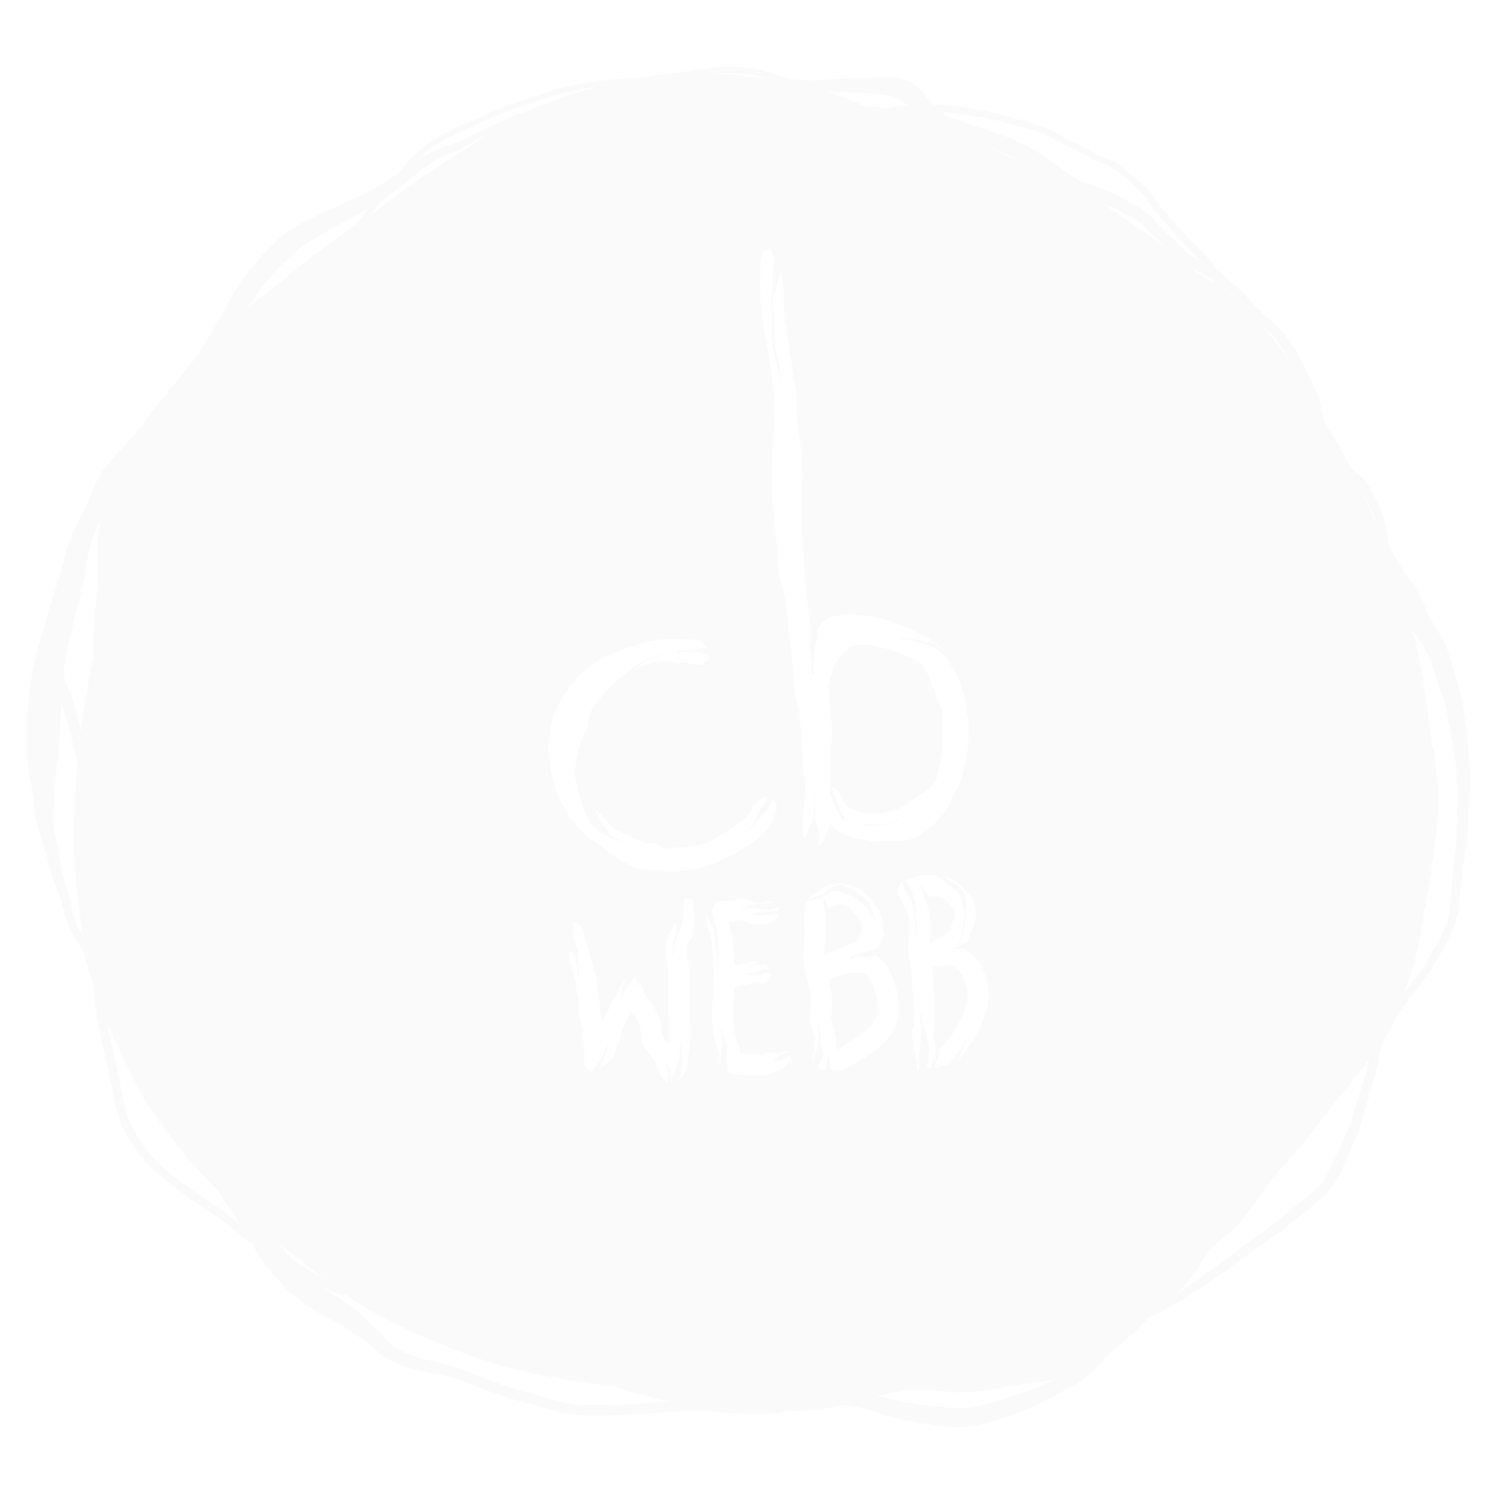 CB Webb